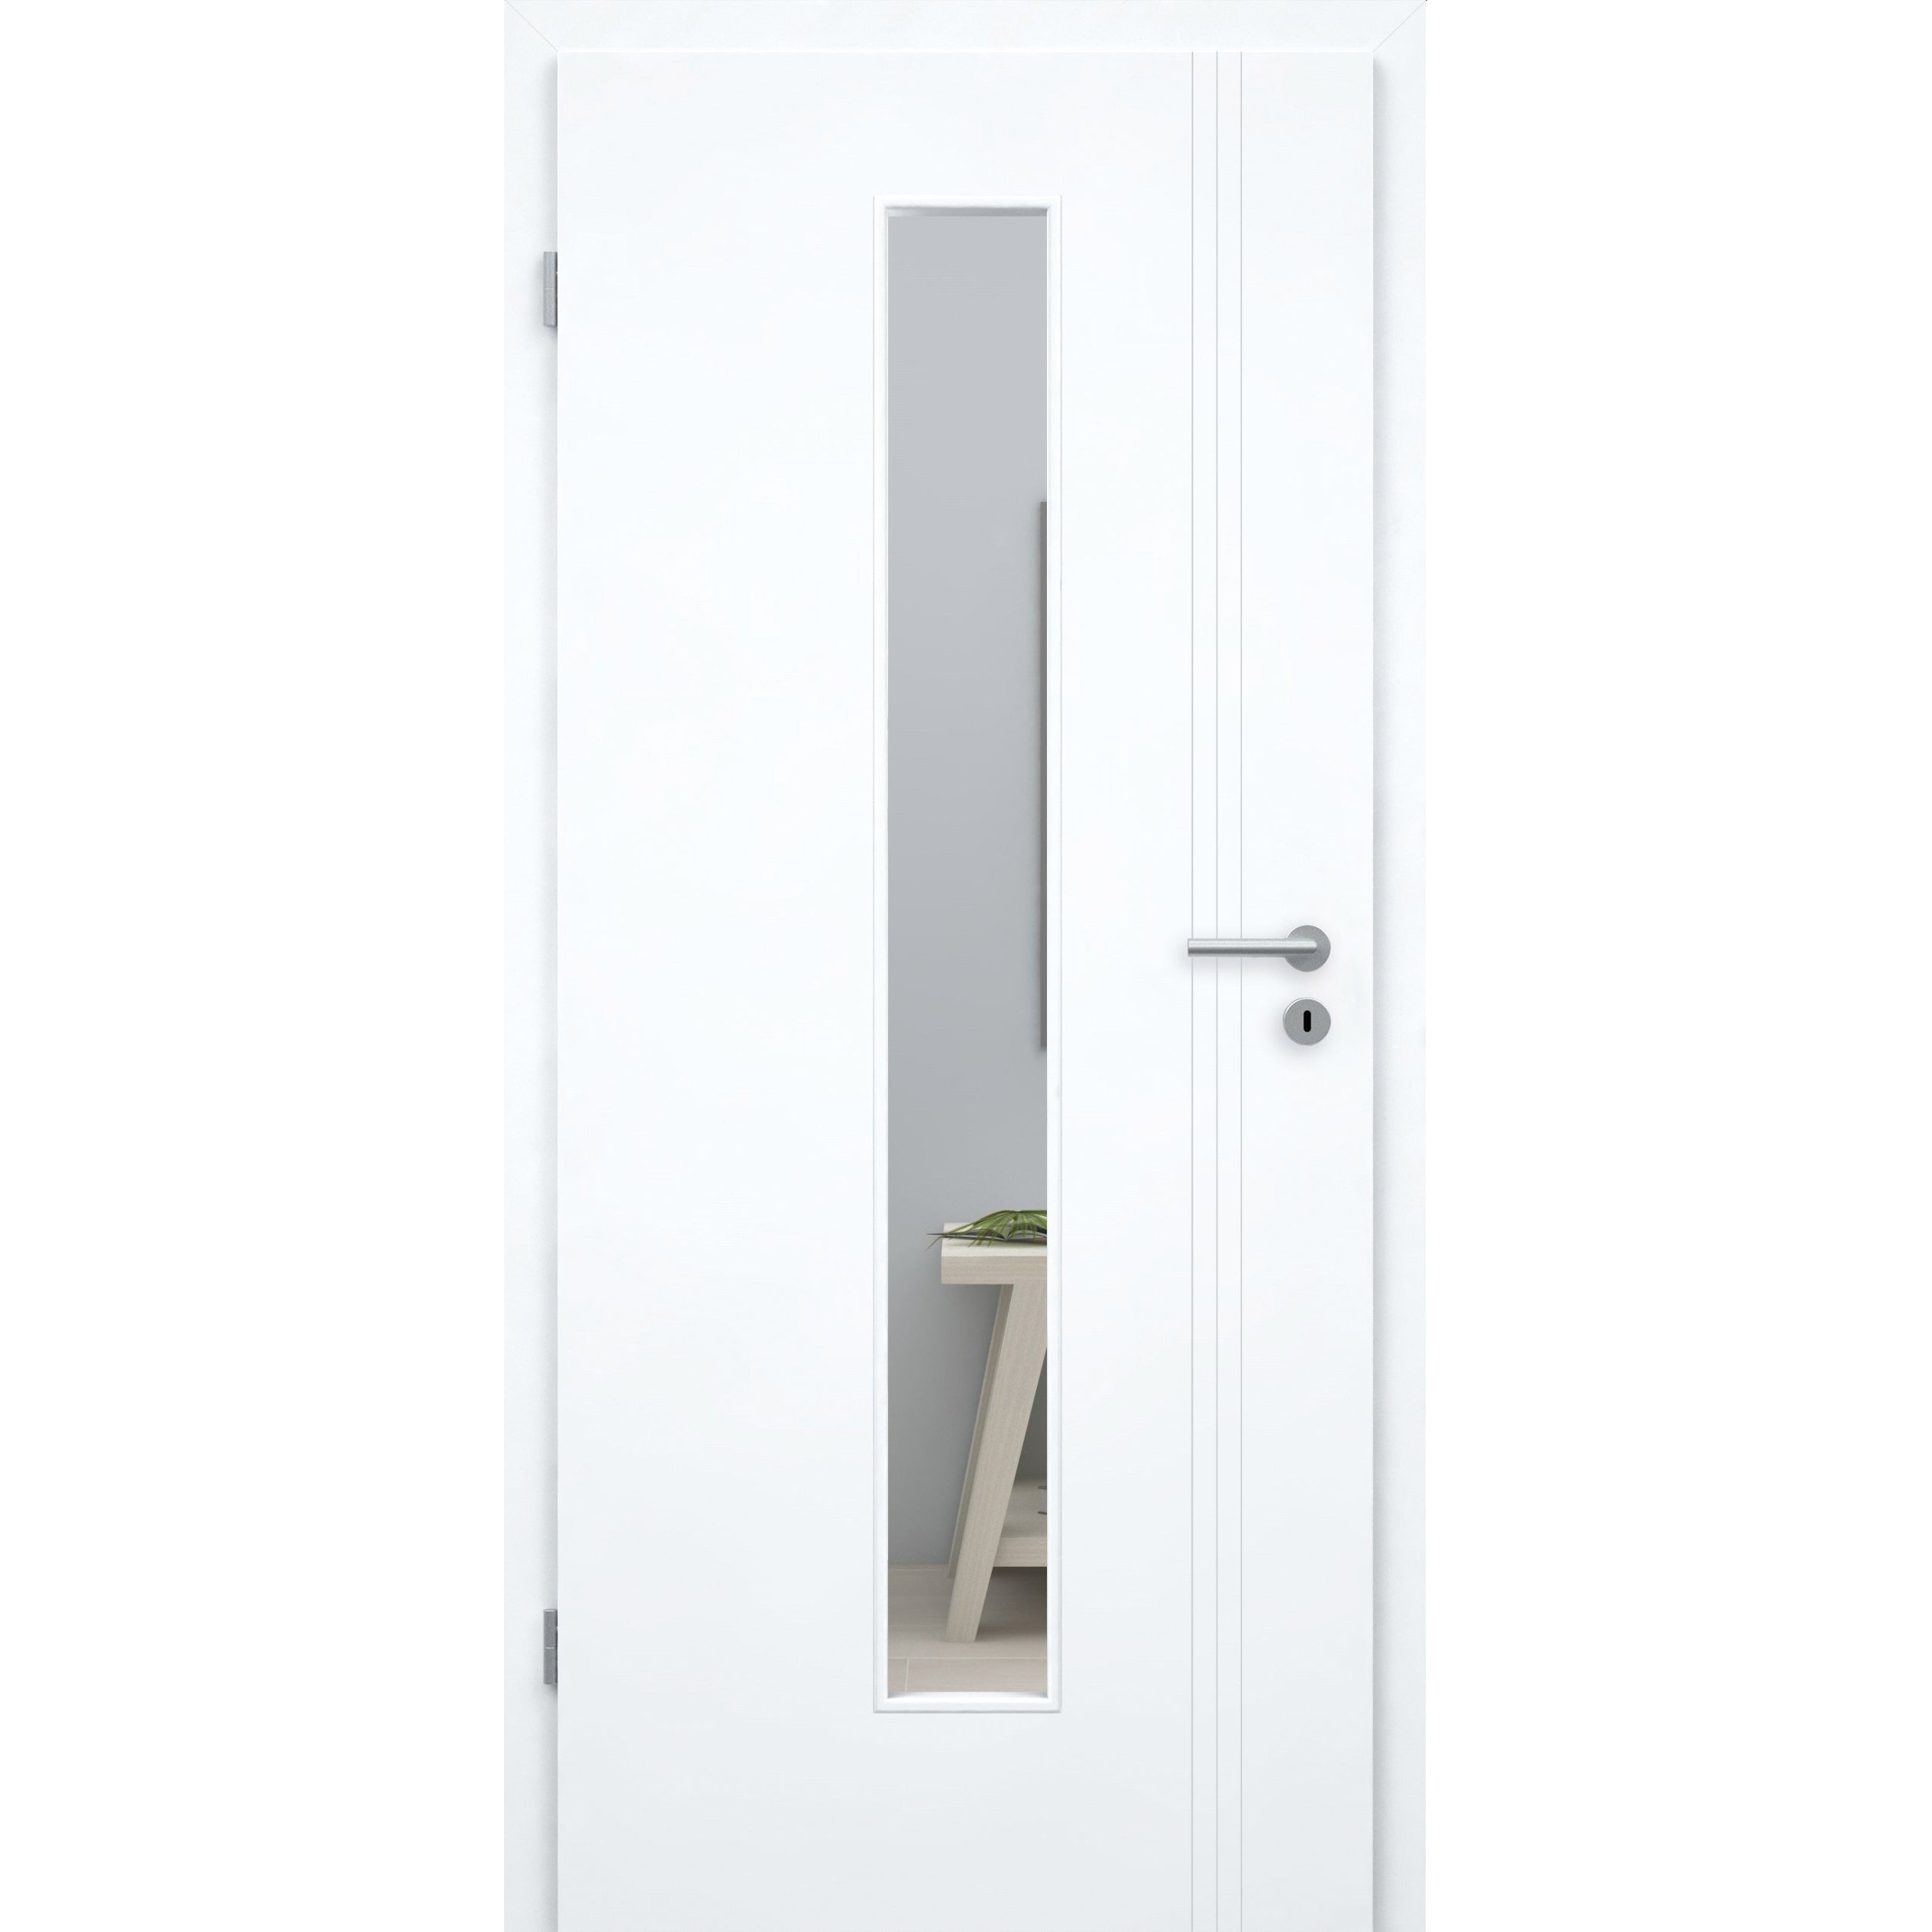 Zimmertür mit Lichtausschnitt brillant-weiß 3 Rillen aufrecht Schlossseite Designkante - Modell Designtür VS33LAM